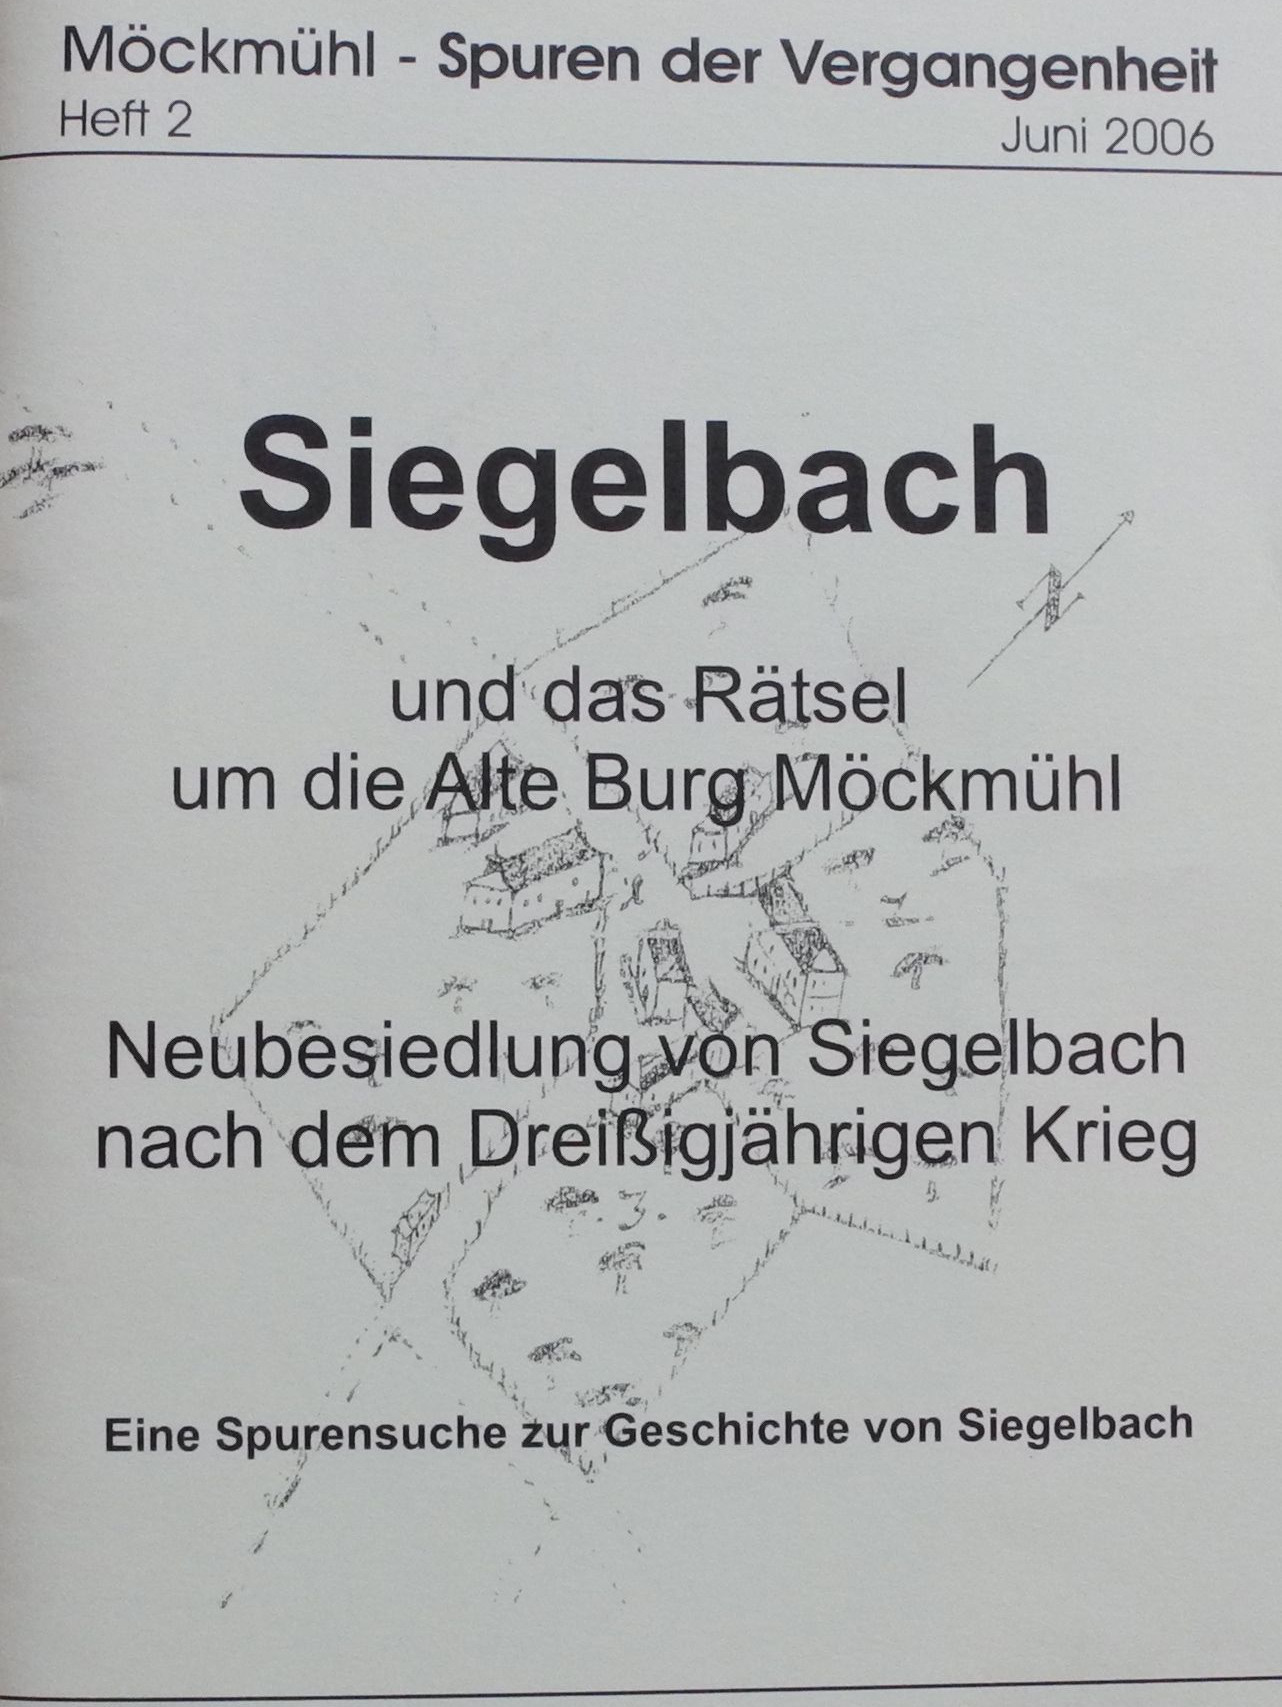 Möckmühl - Spuren der Vergangenheit, Heft 2 Siegelbach